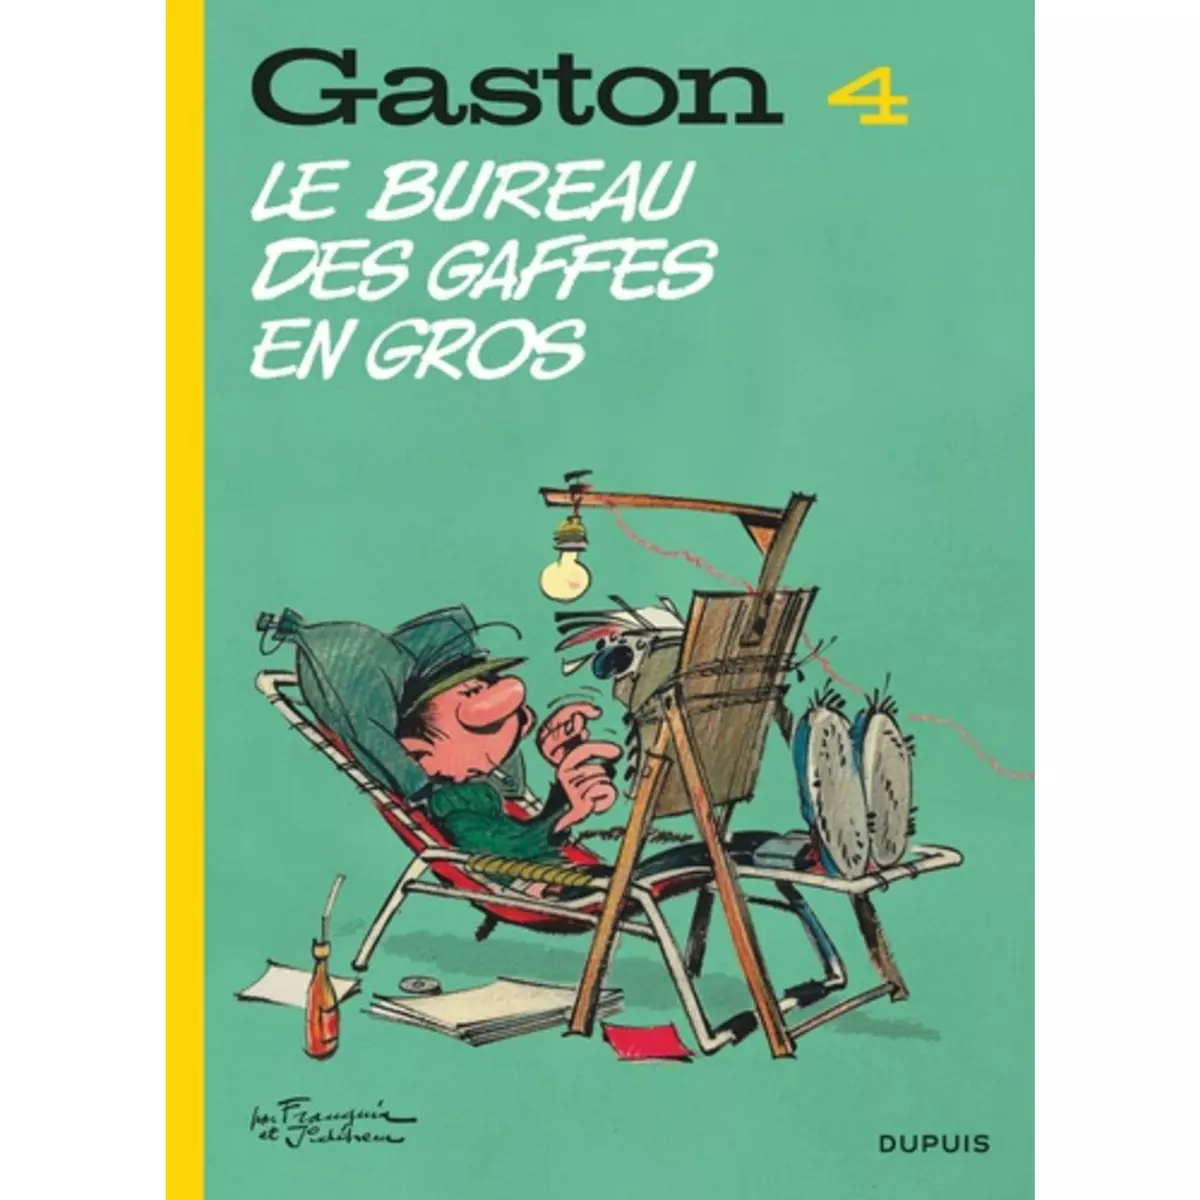  GASTON TOME 4 : LE BUREAU DES GAFFES EN GROS, Franquin André